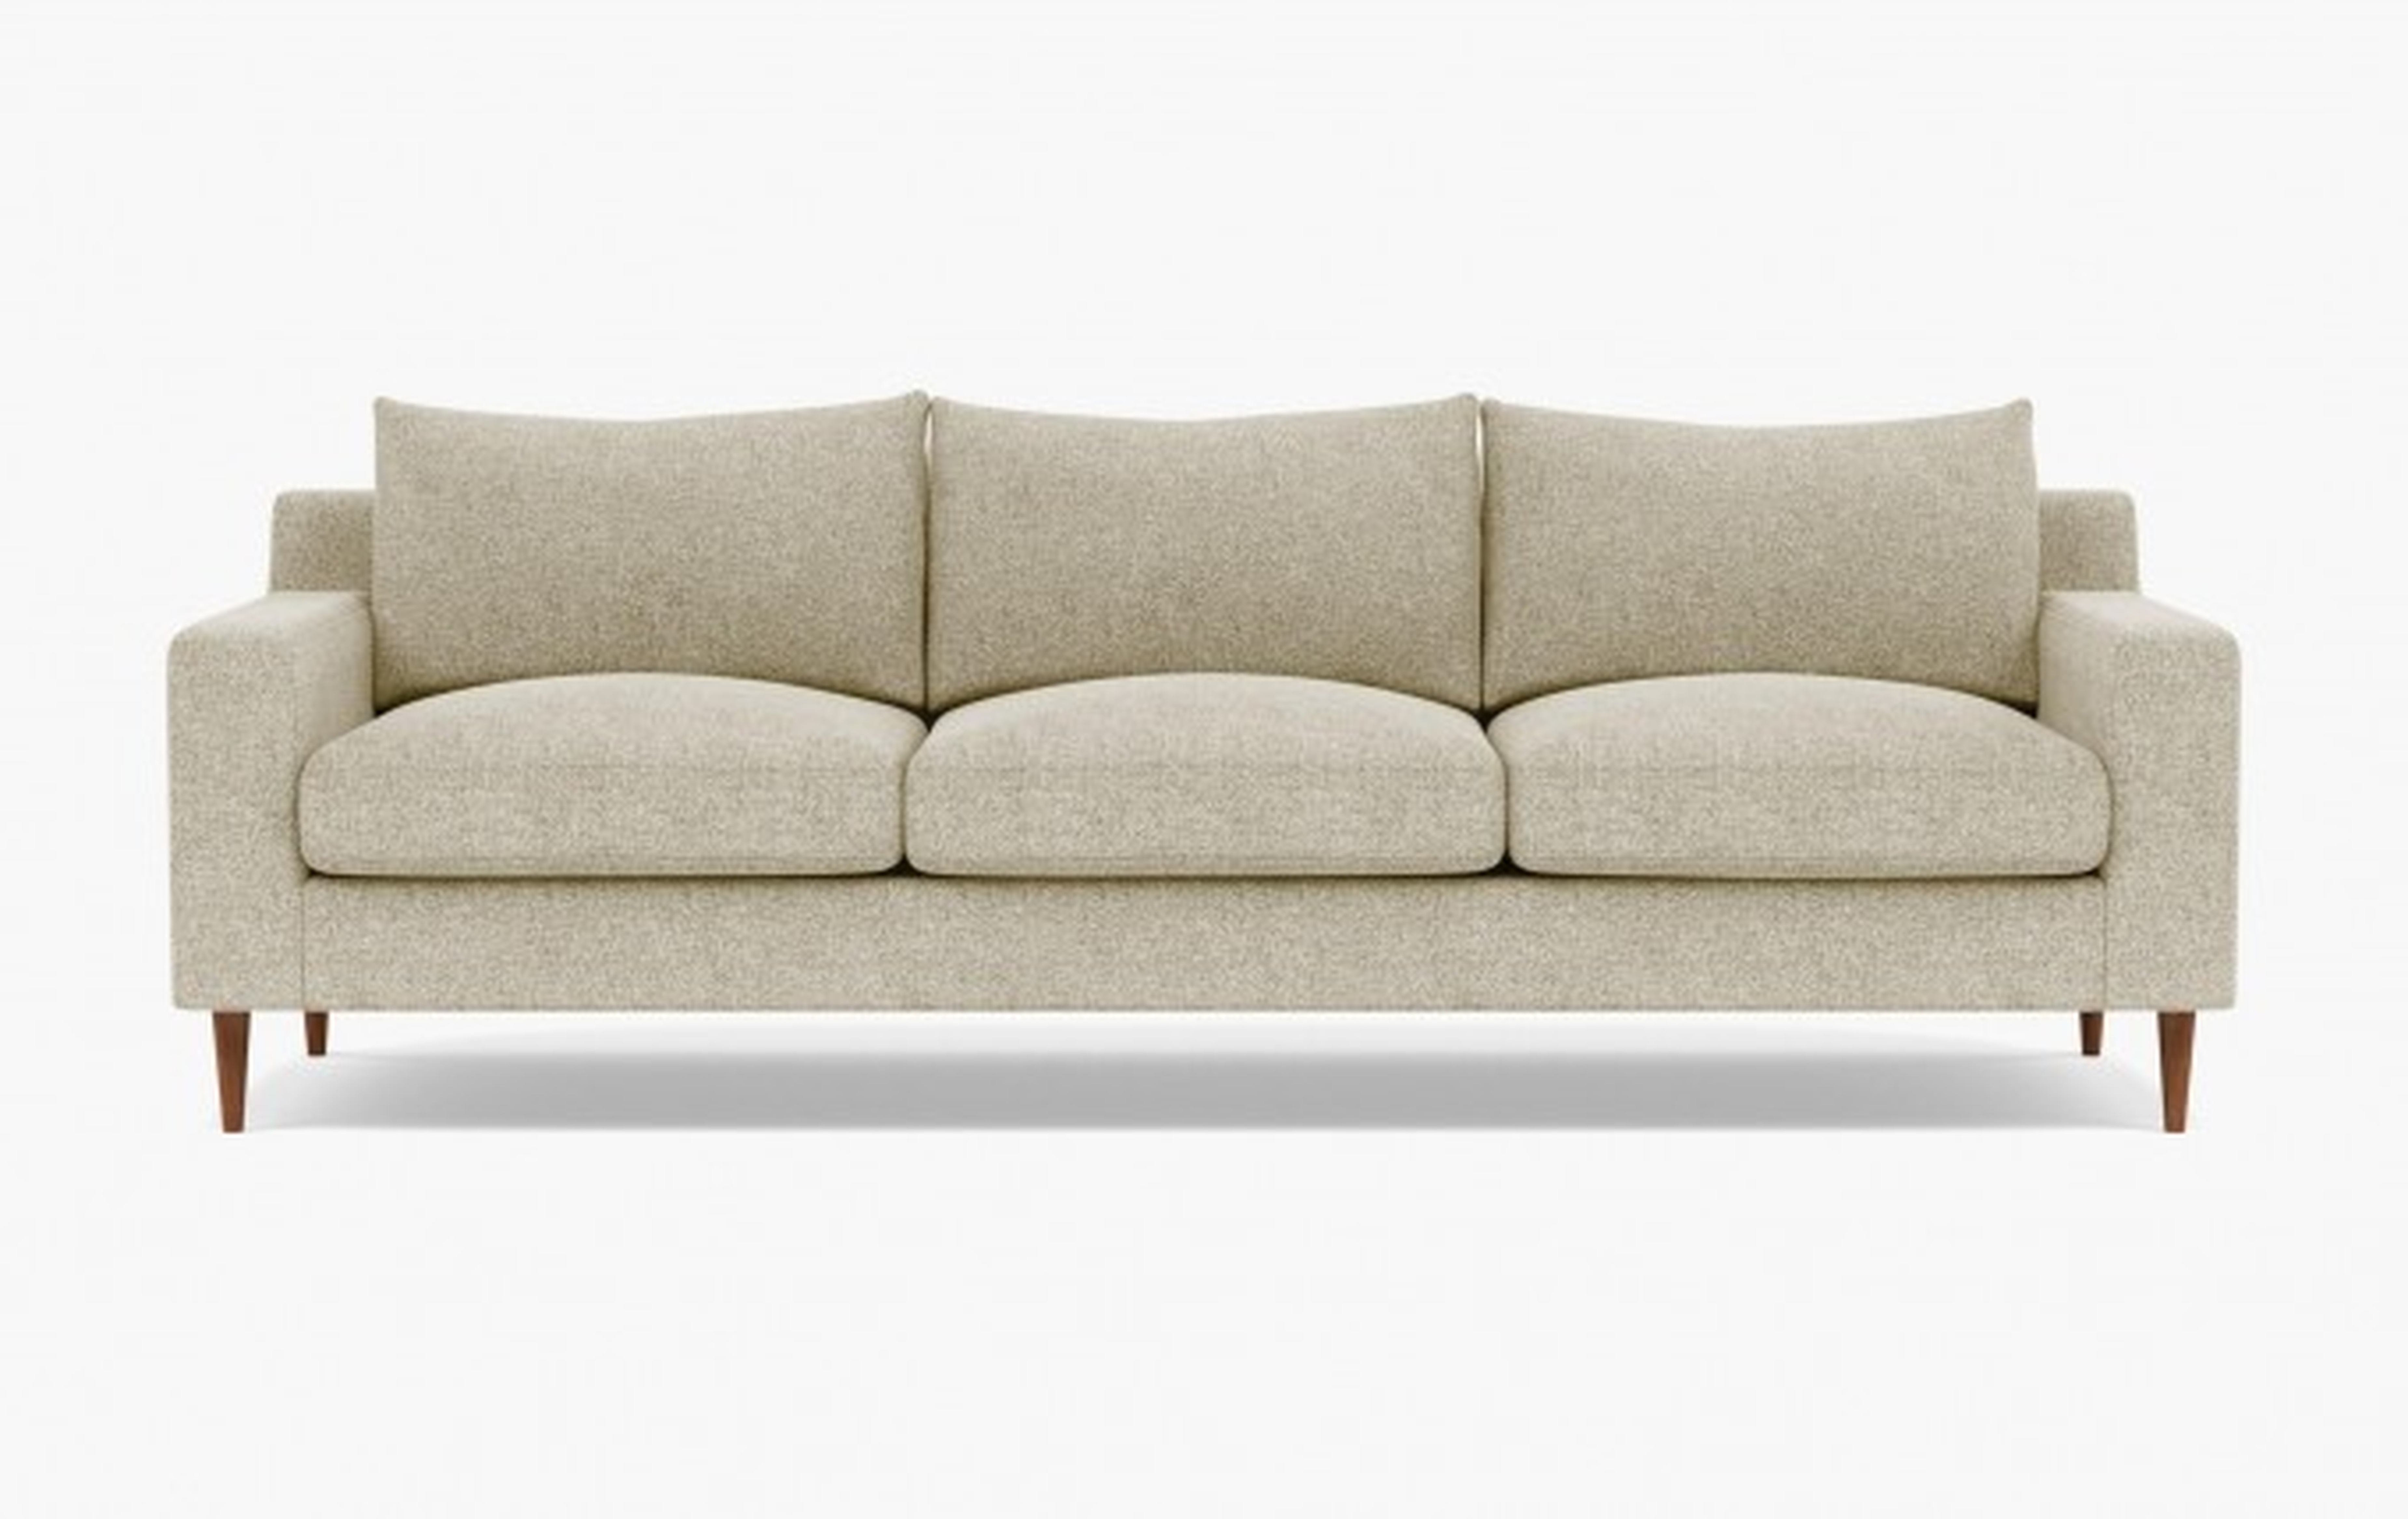 Sloane 3 Seat Sofa - 99", Oat,, Natural Oak Legs - Interior Define